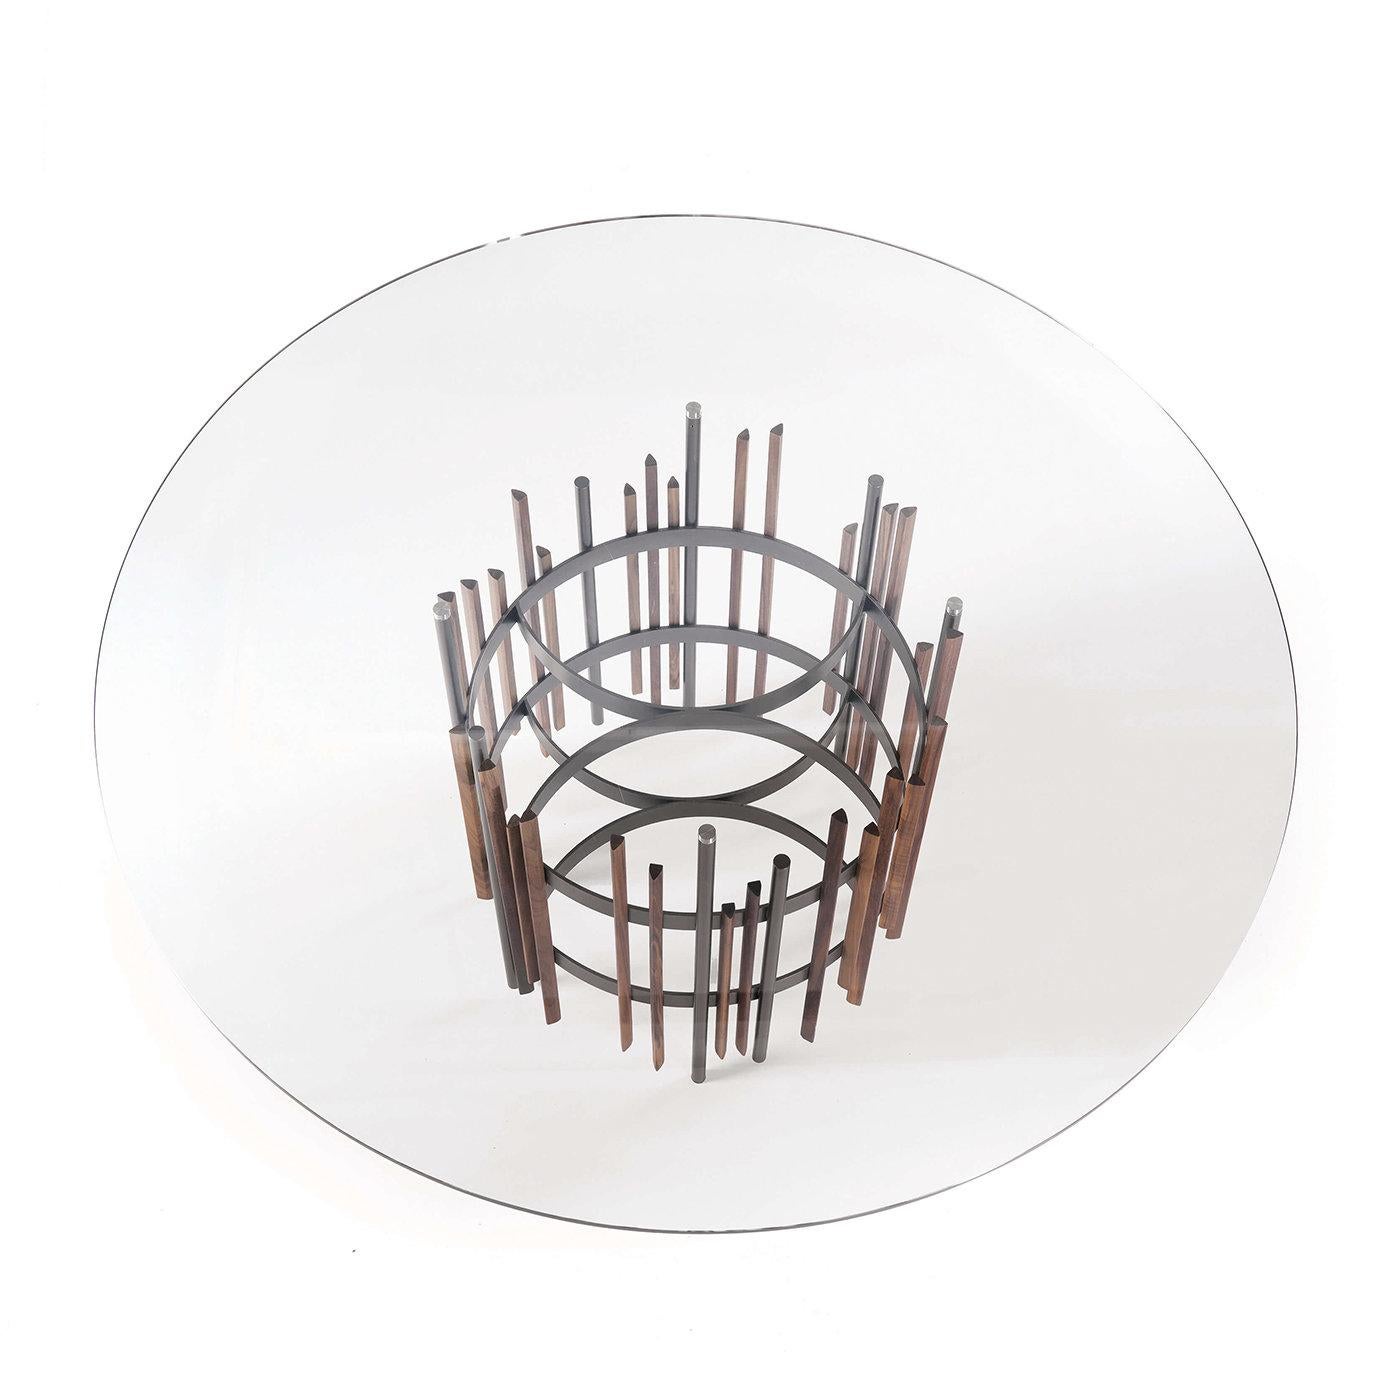 Cette superbe table de salle à manger fait partie de la collection Tube conçue par Norberto Delfinetti. Sa structure en métal peint au titane est composée d'une multitude d'éléments verticaux avec des détails en noyer Canaletto massif. Cette pièce